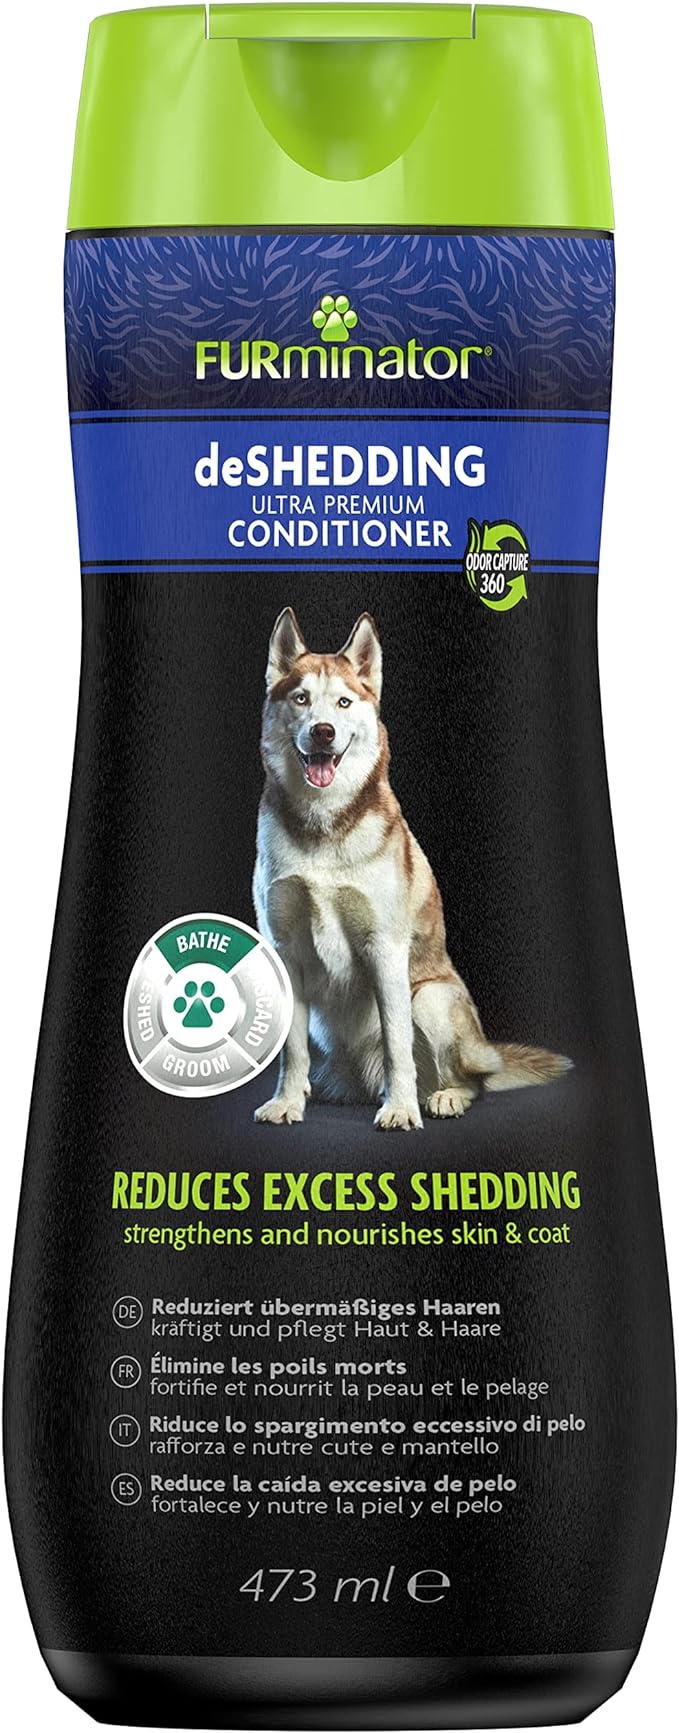 Furminator Dog deShedding Conditioner 473ml